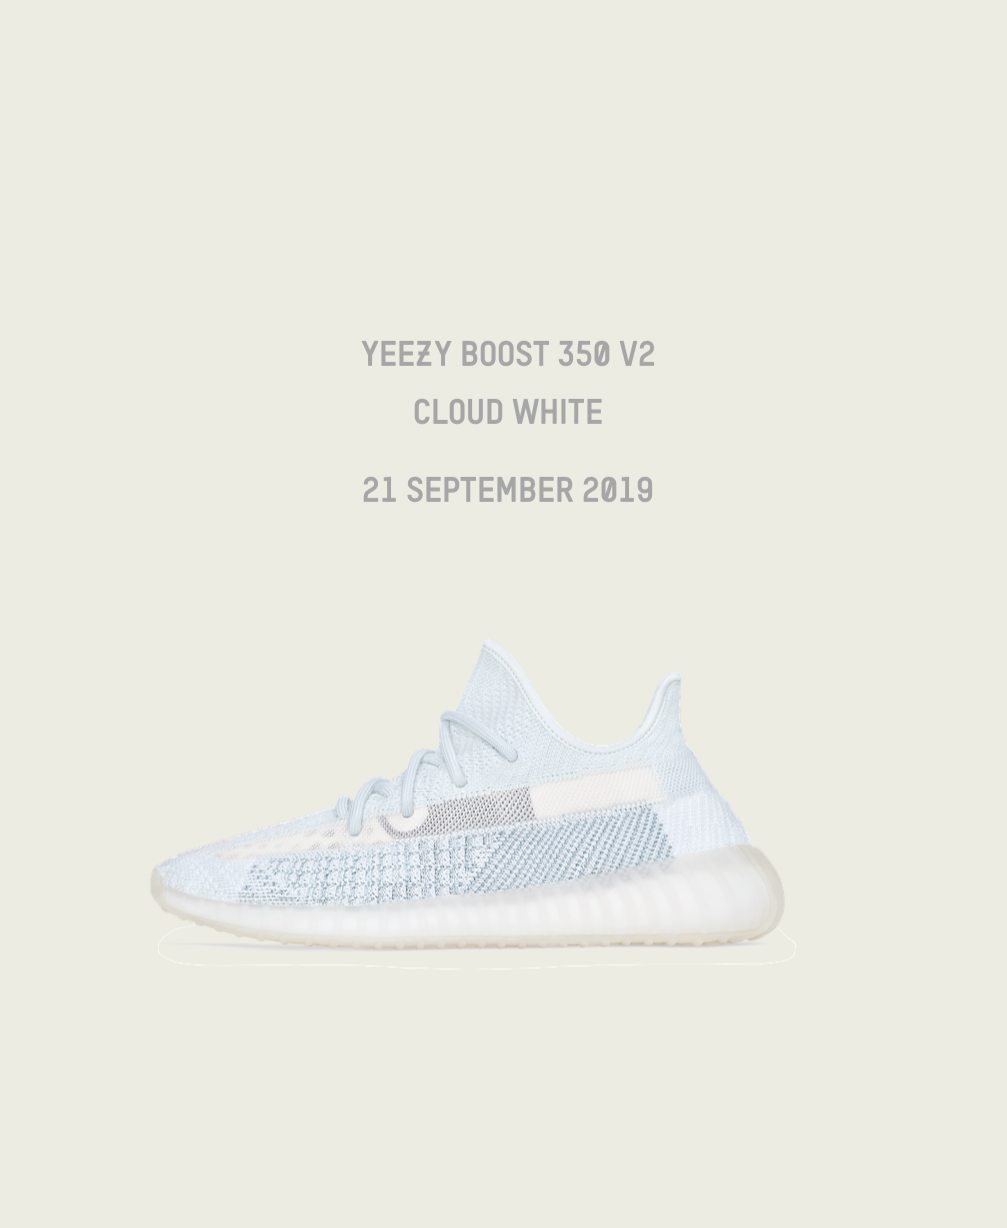 Yeezy Boost 350 V2 Cloud White. September 21, 2019.